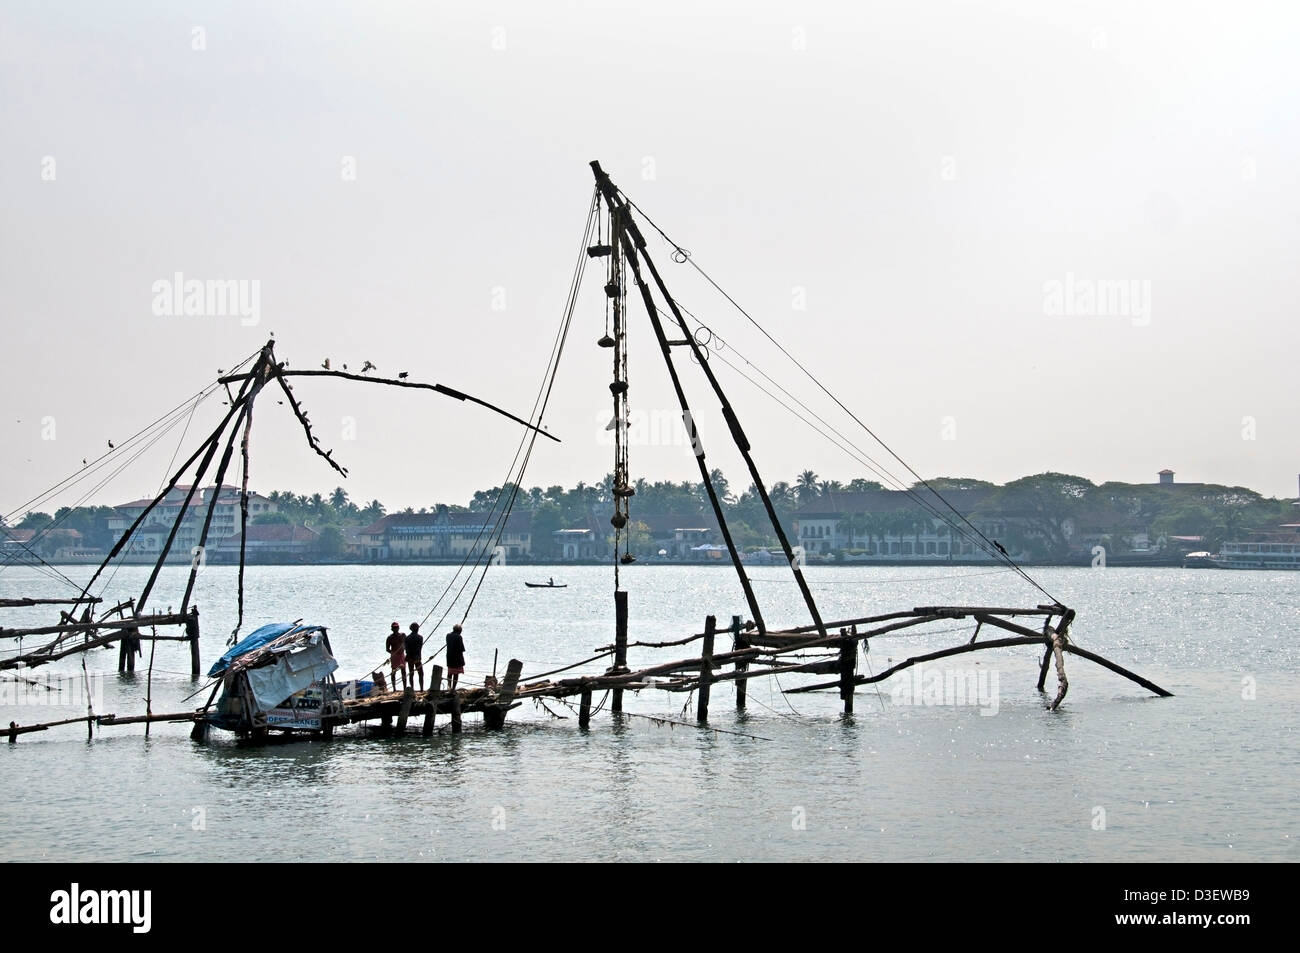 Chinese fishing nets Kochi Cochin Kerala India Stock Photo